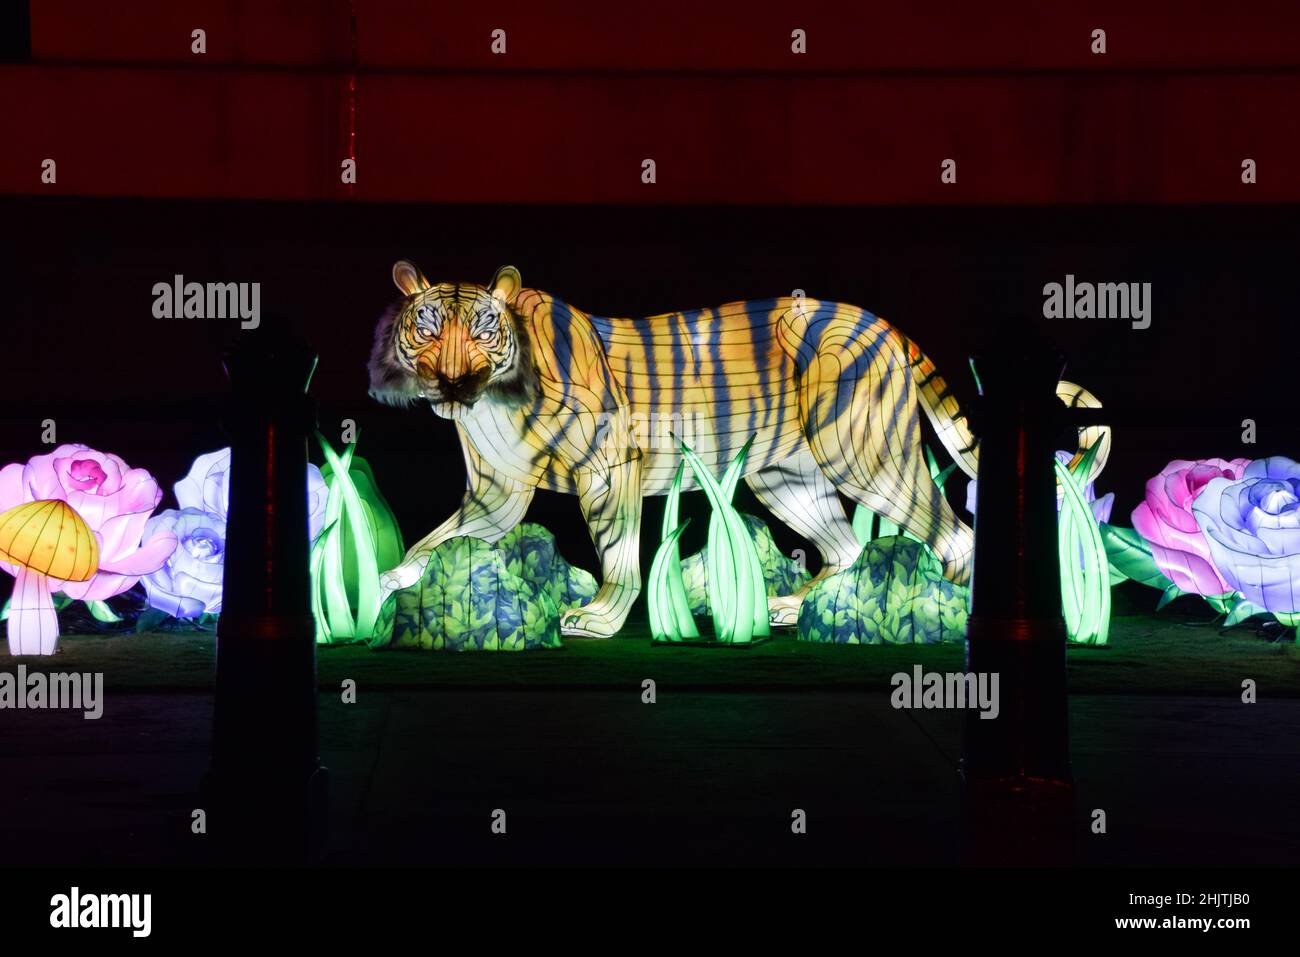 Londres, Royaume-Uni 31st janvier 2022.Une lanterne tigre illuminée à Trafalgar Square pour célébrer le nouvel an chinois.Cette année marque l'année du tigre.Credit: Vuk Valcic / Alamy Live News Banque D'Images